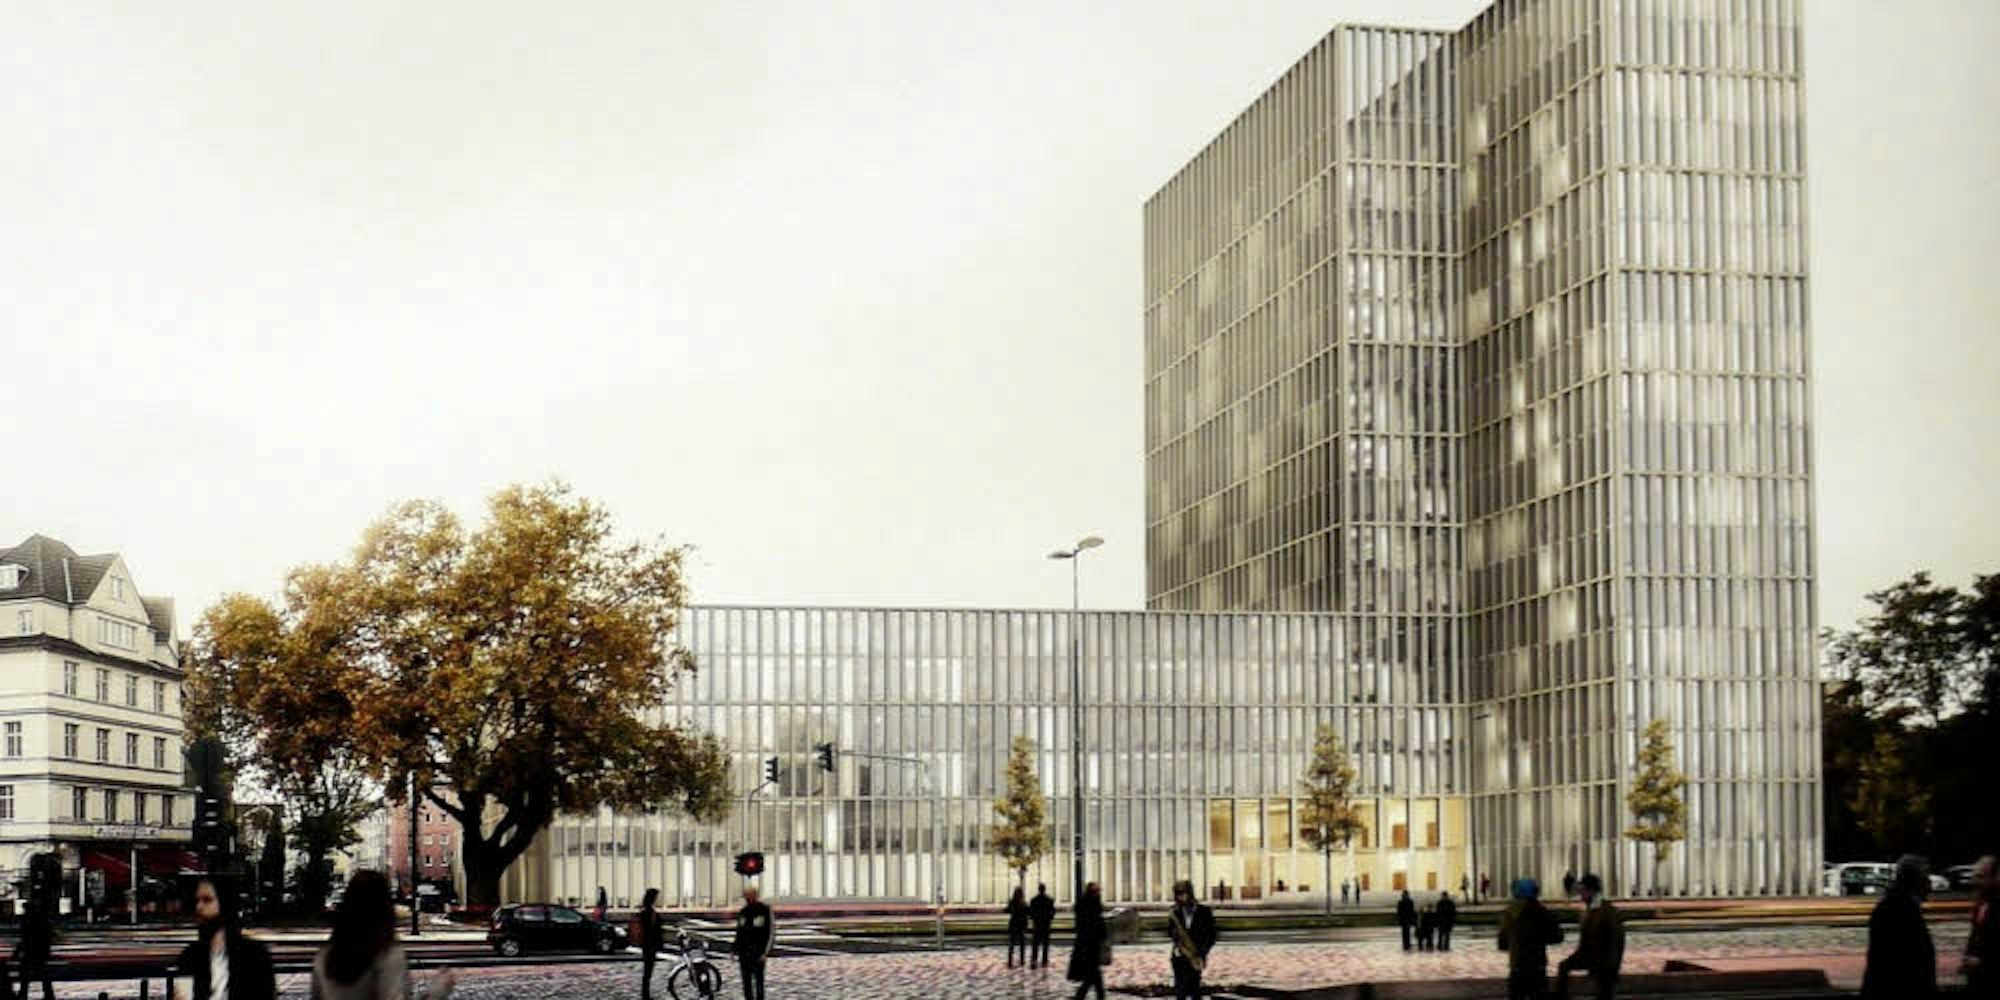 Eine klar gegliederte Fassade mit zwei scheibenförmigen Bürotürmen – so soll das LVR-Bürogebäude künftig aussehen.